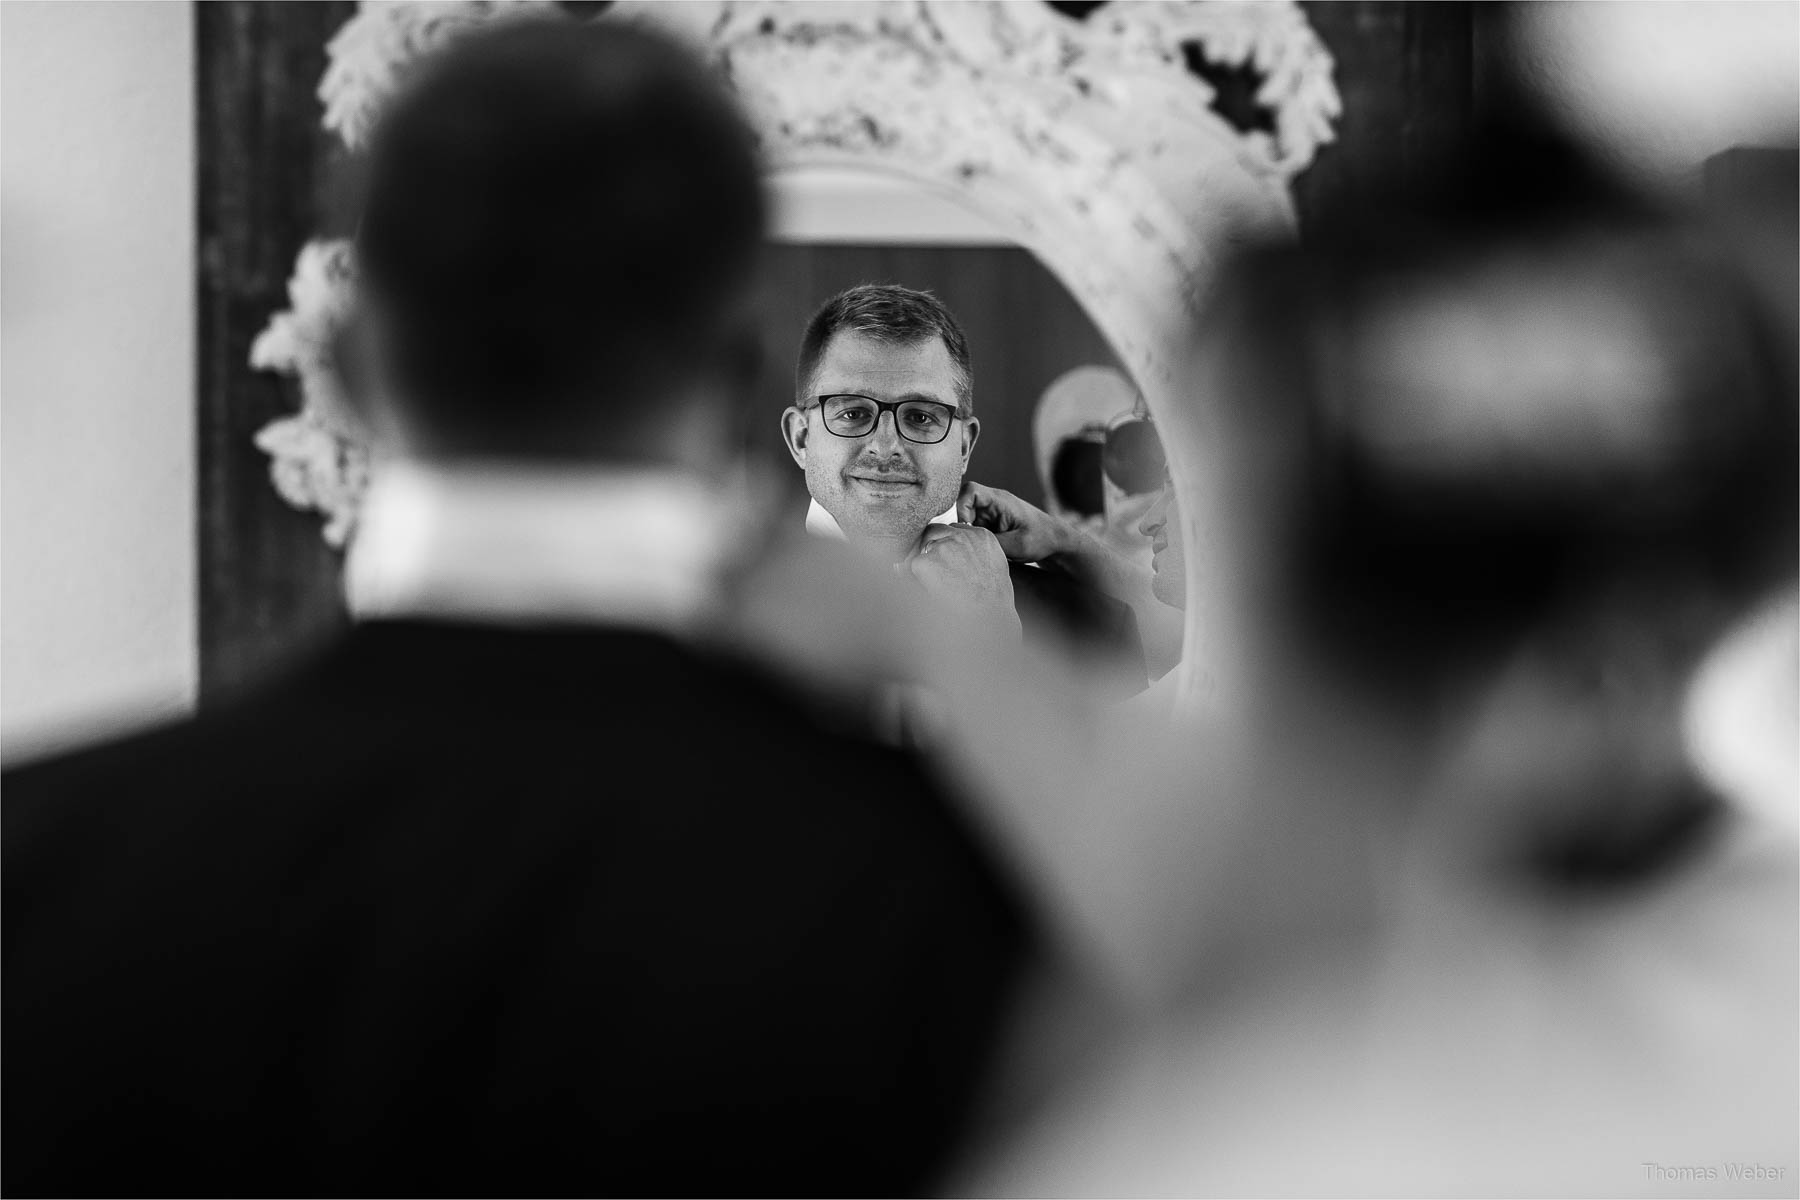 Vorbereitungen und Ankleide des Bräutigams, Kirchliche Hochzeit in Rastede und Hochzeitsfeier in der Scheune St. Georg Rastede, Hochzeitsfotograf Thomas Weber aus Oldenburg